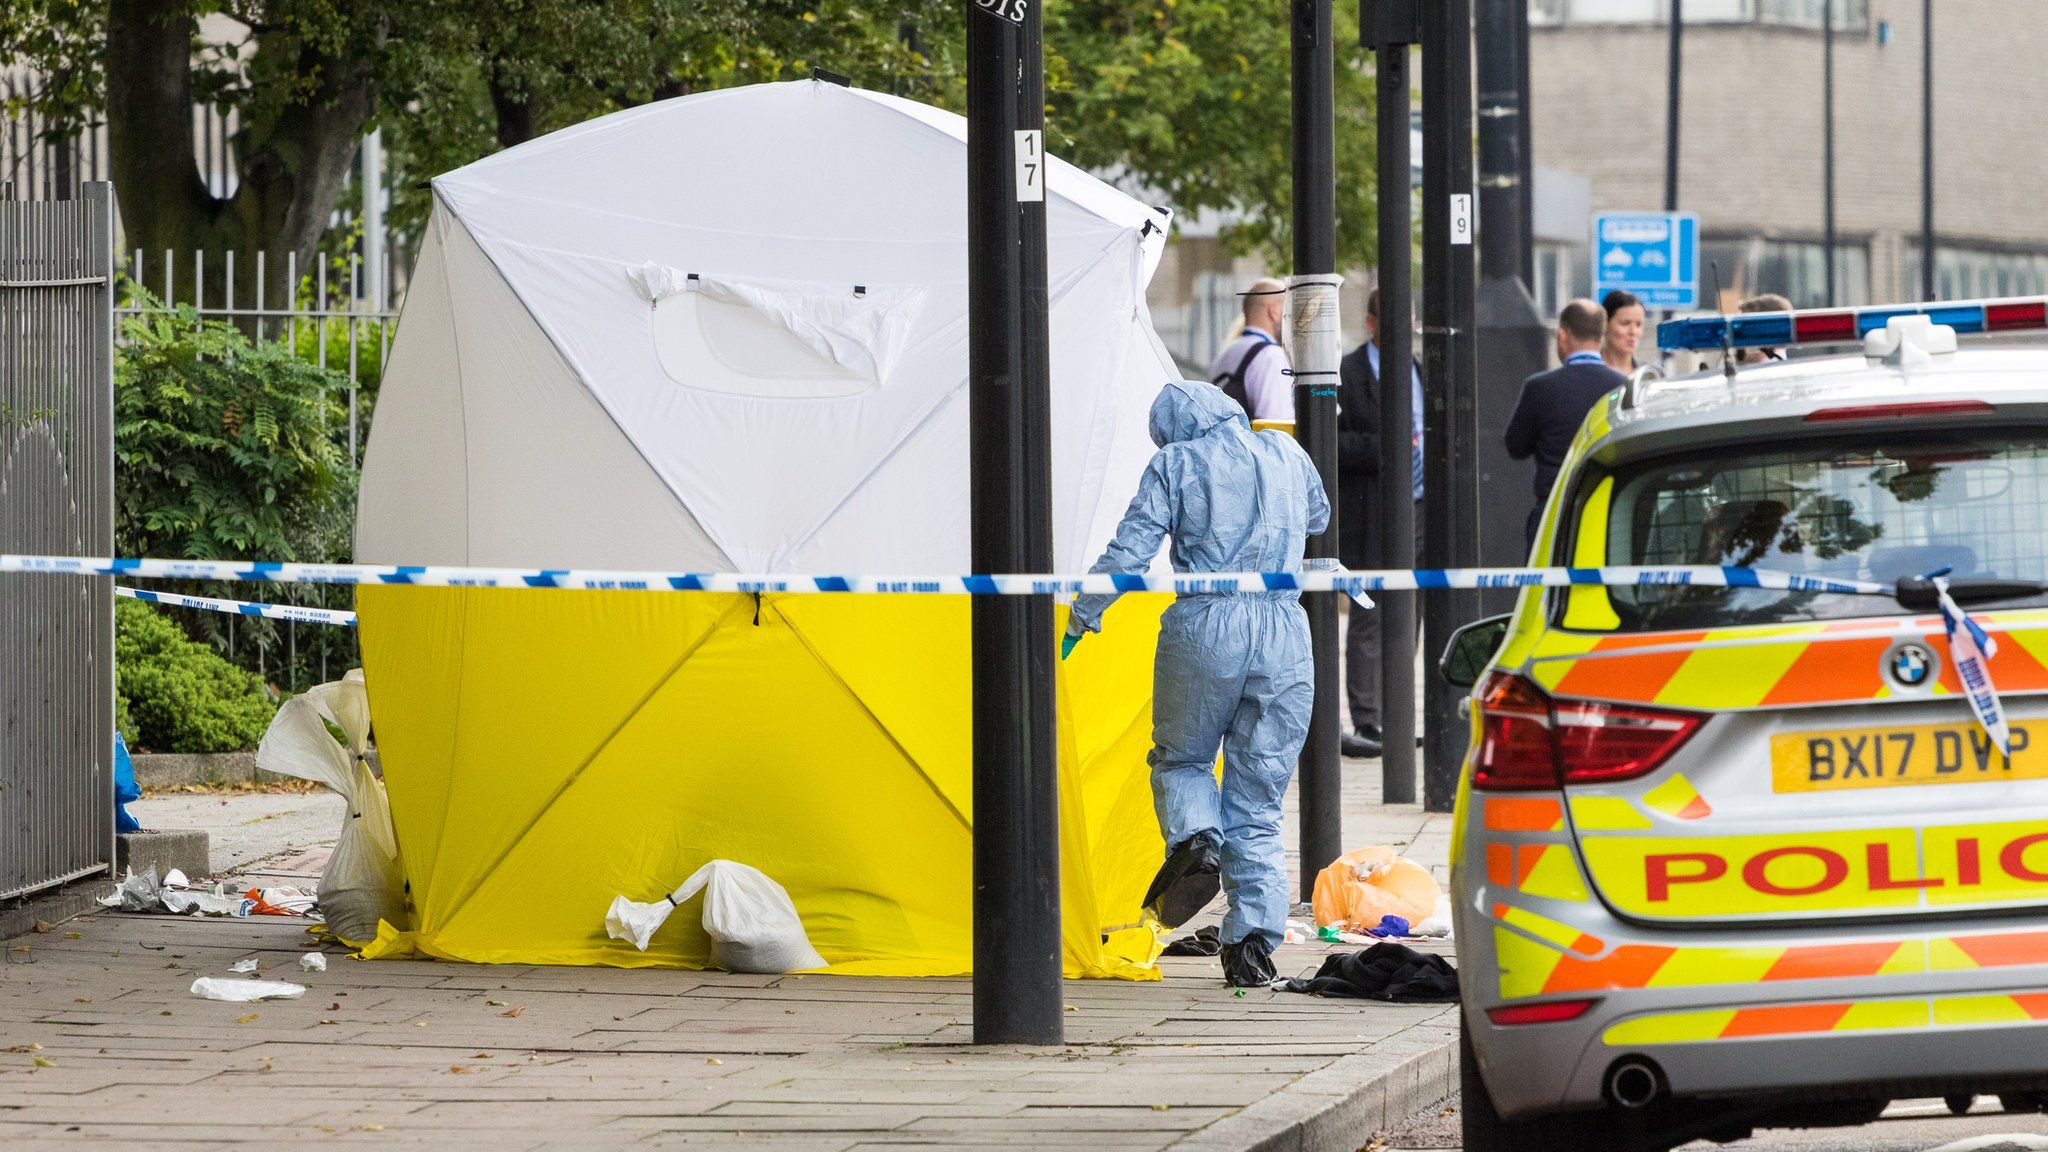 Police at scene of stabbing in London